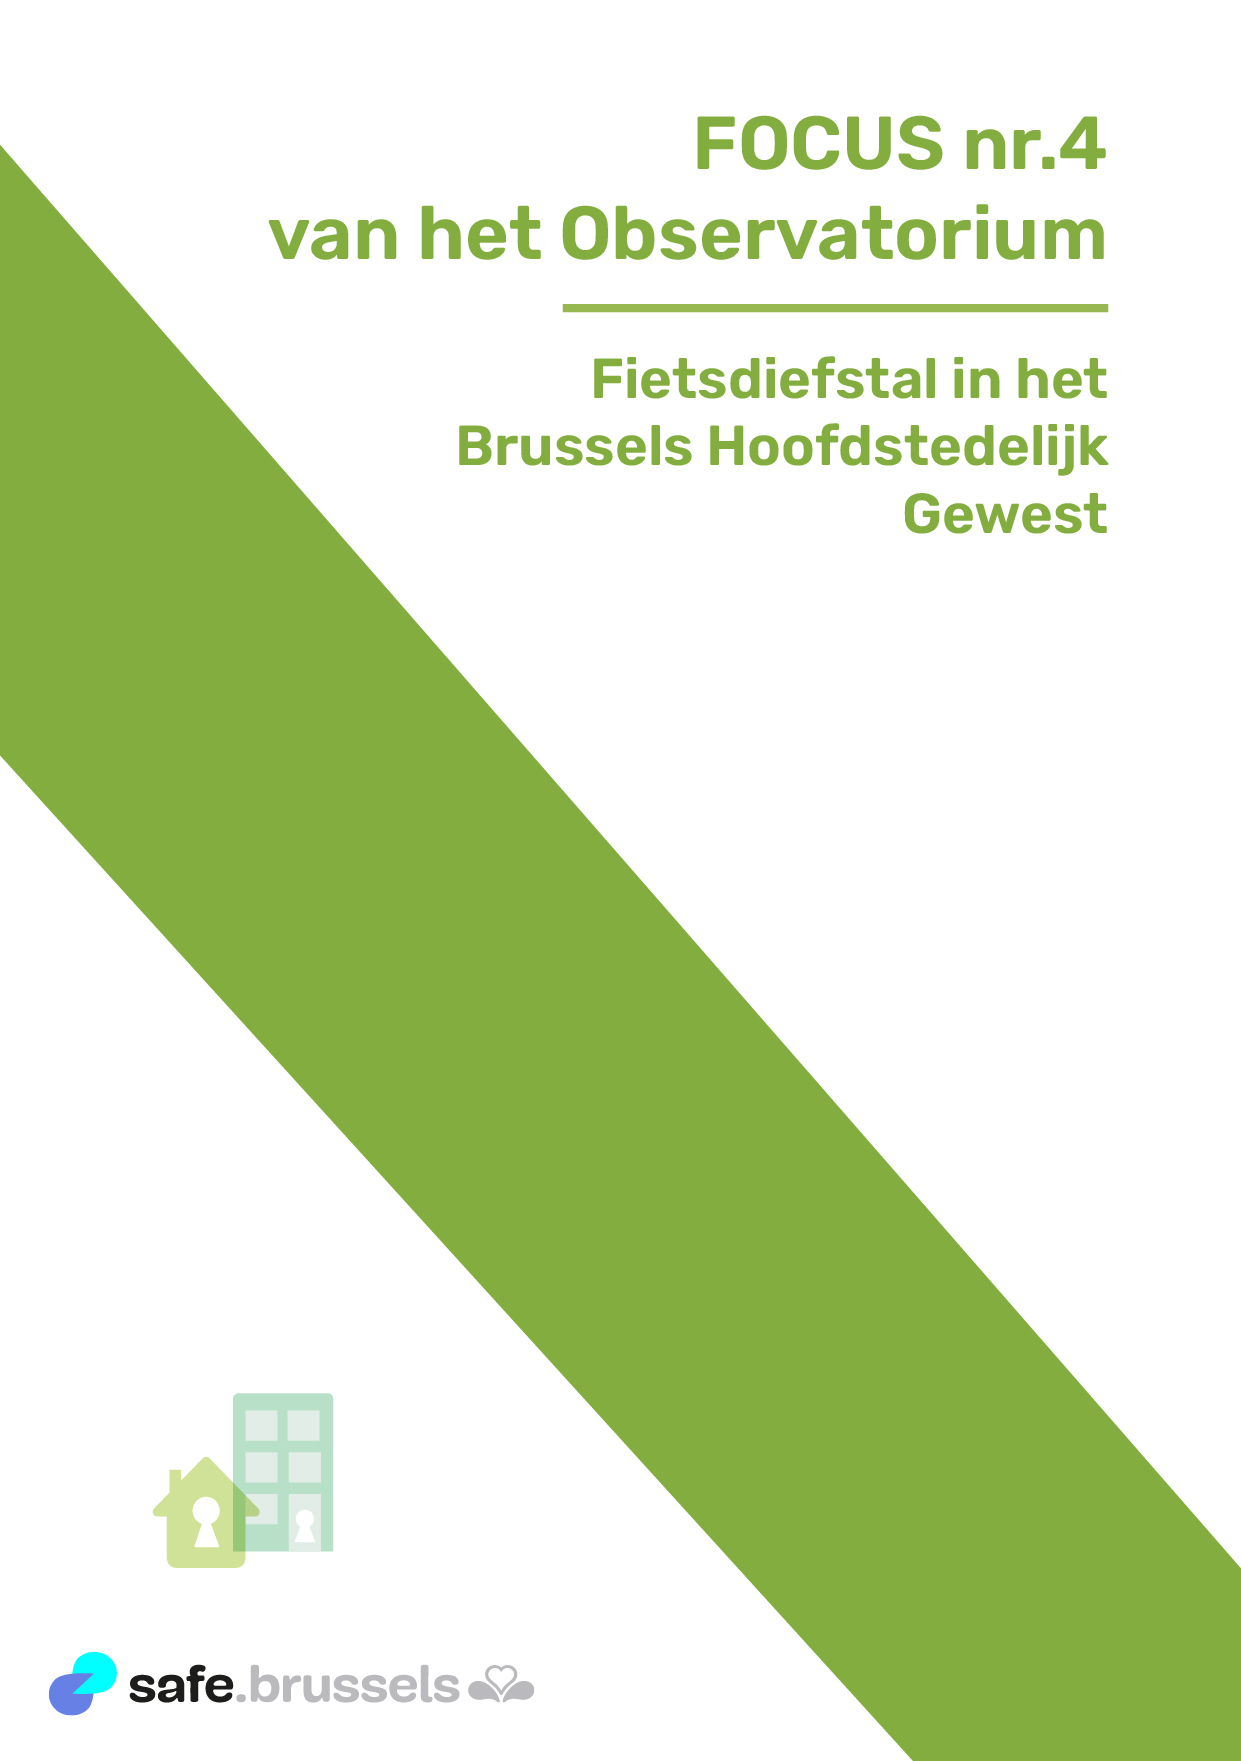 Fietsdiefstal in het Brussels Gewest: safe.brussels publiceert een nieuwe analyse in samenwerking met de diensten van de Directie Coördinatie en Ondersteuning van de Federale Politie in Brussel 